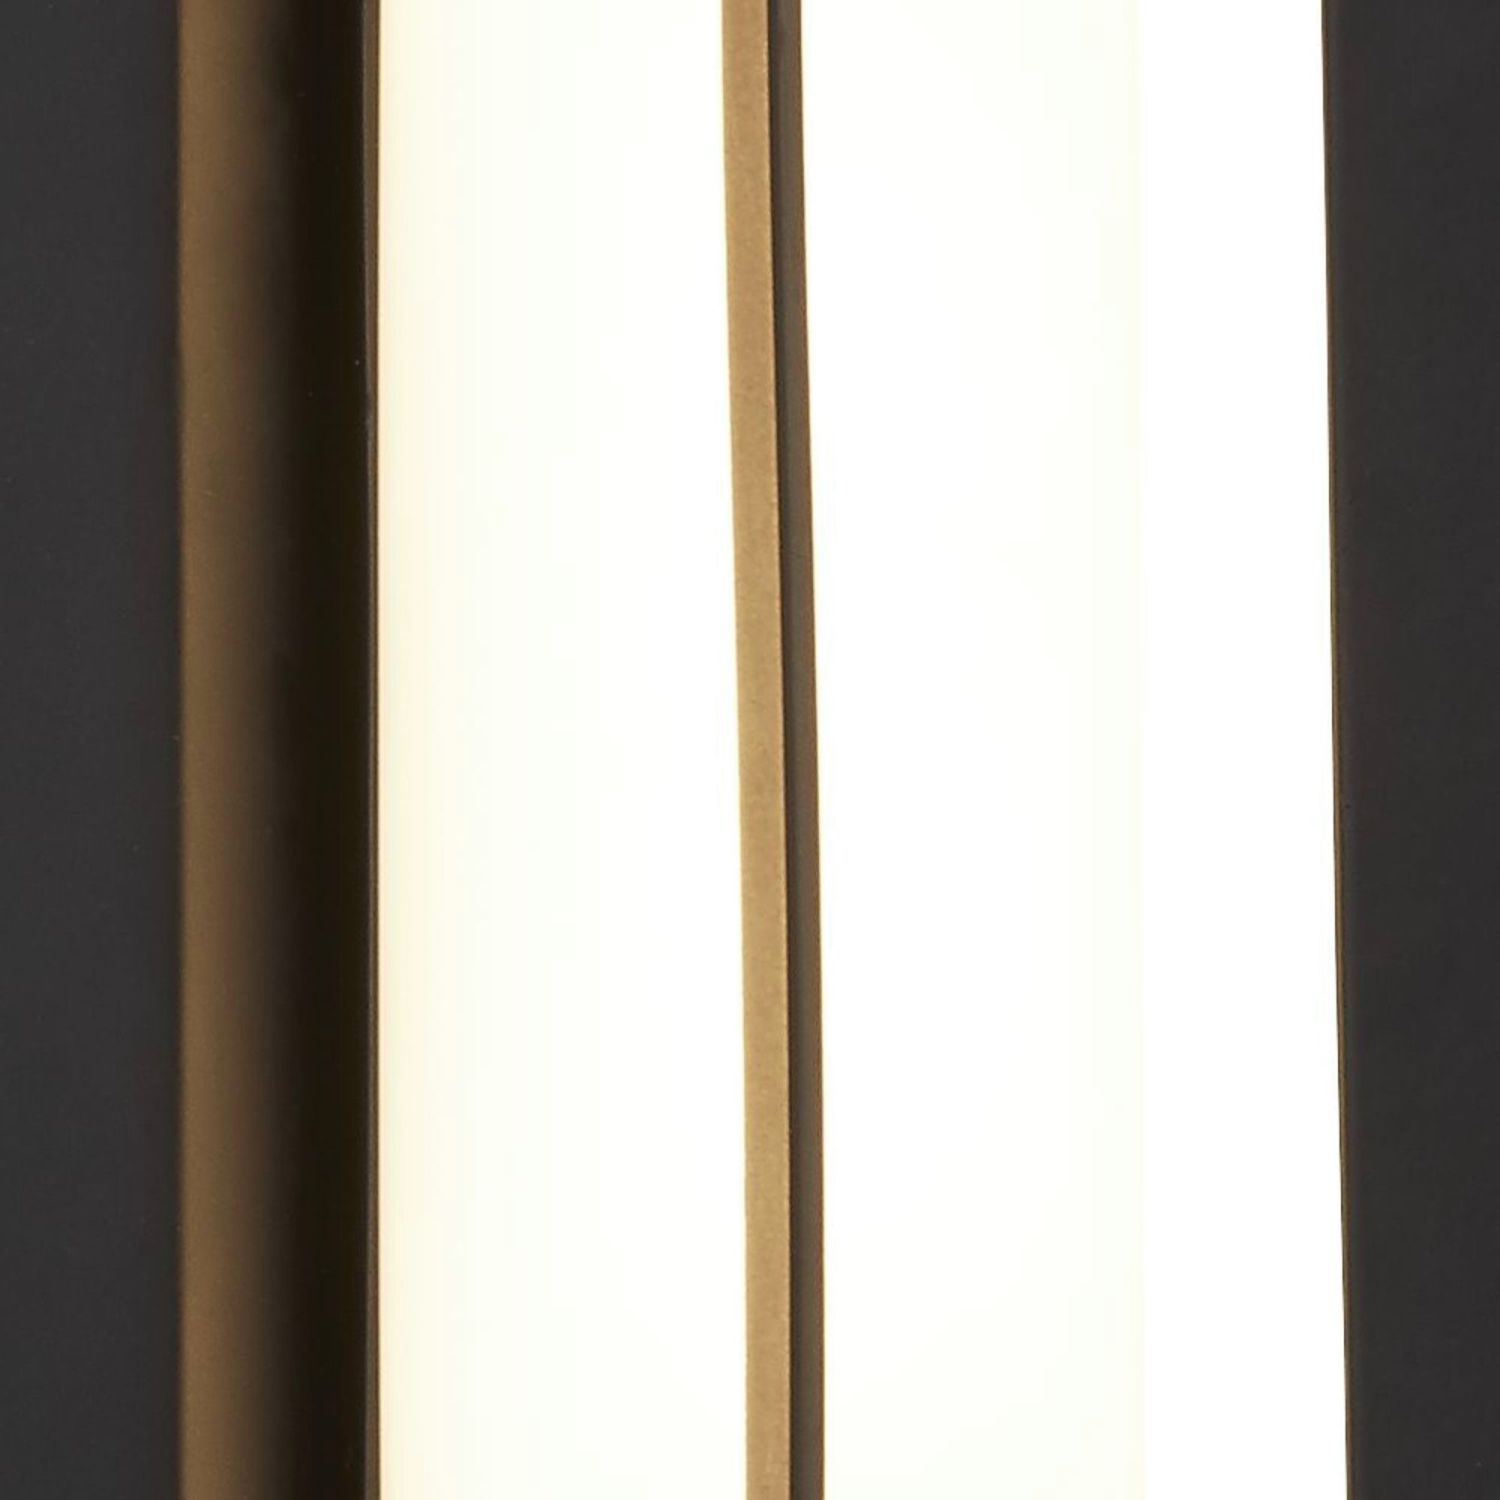 LED Badlampe Wand IP44 Schwarz Weiß H: 20 cm blendarm